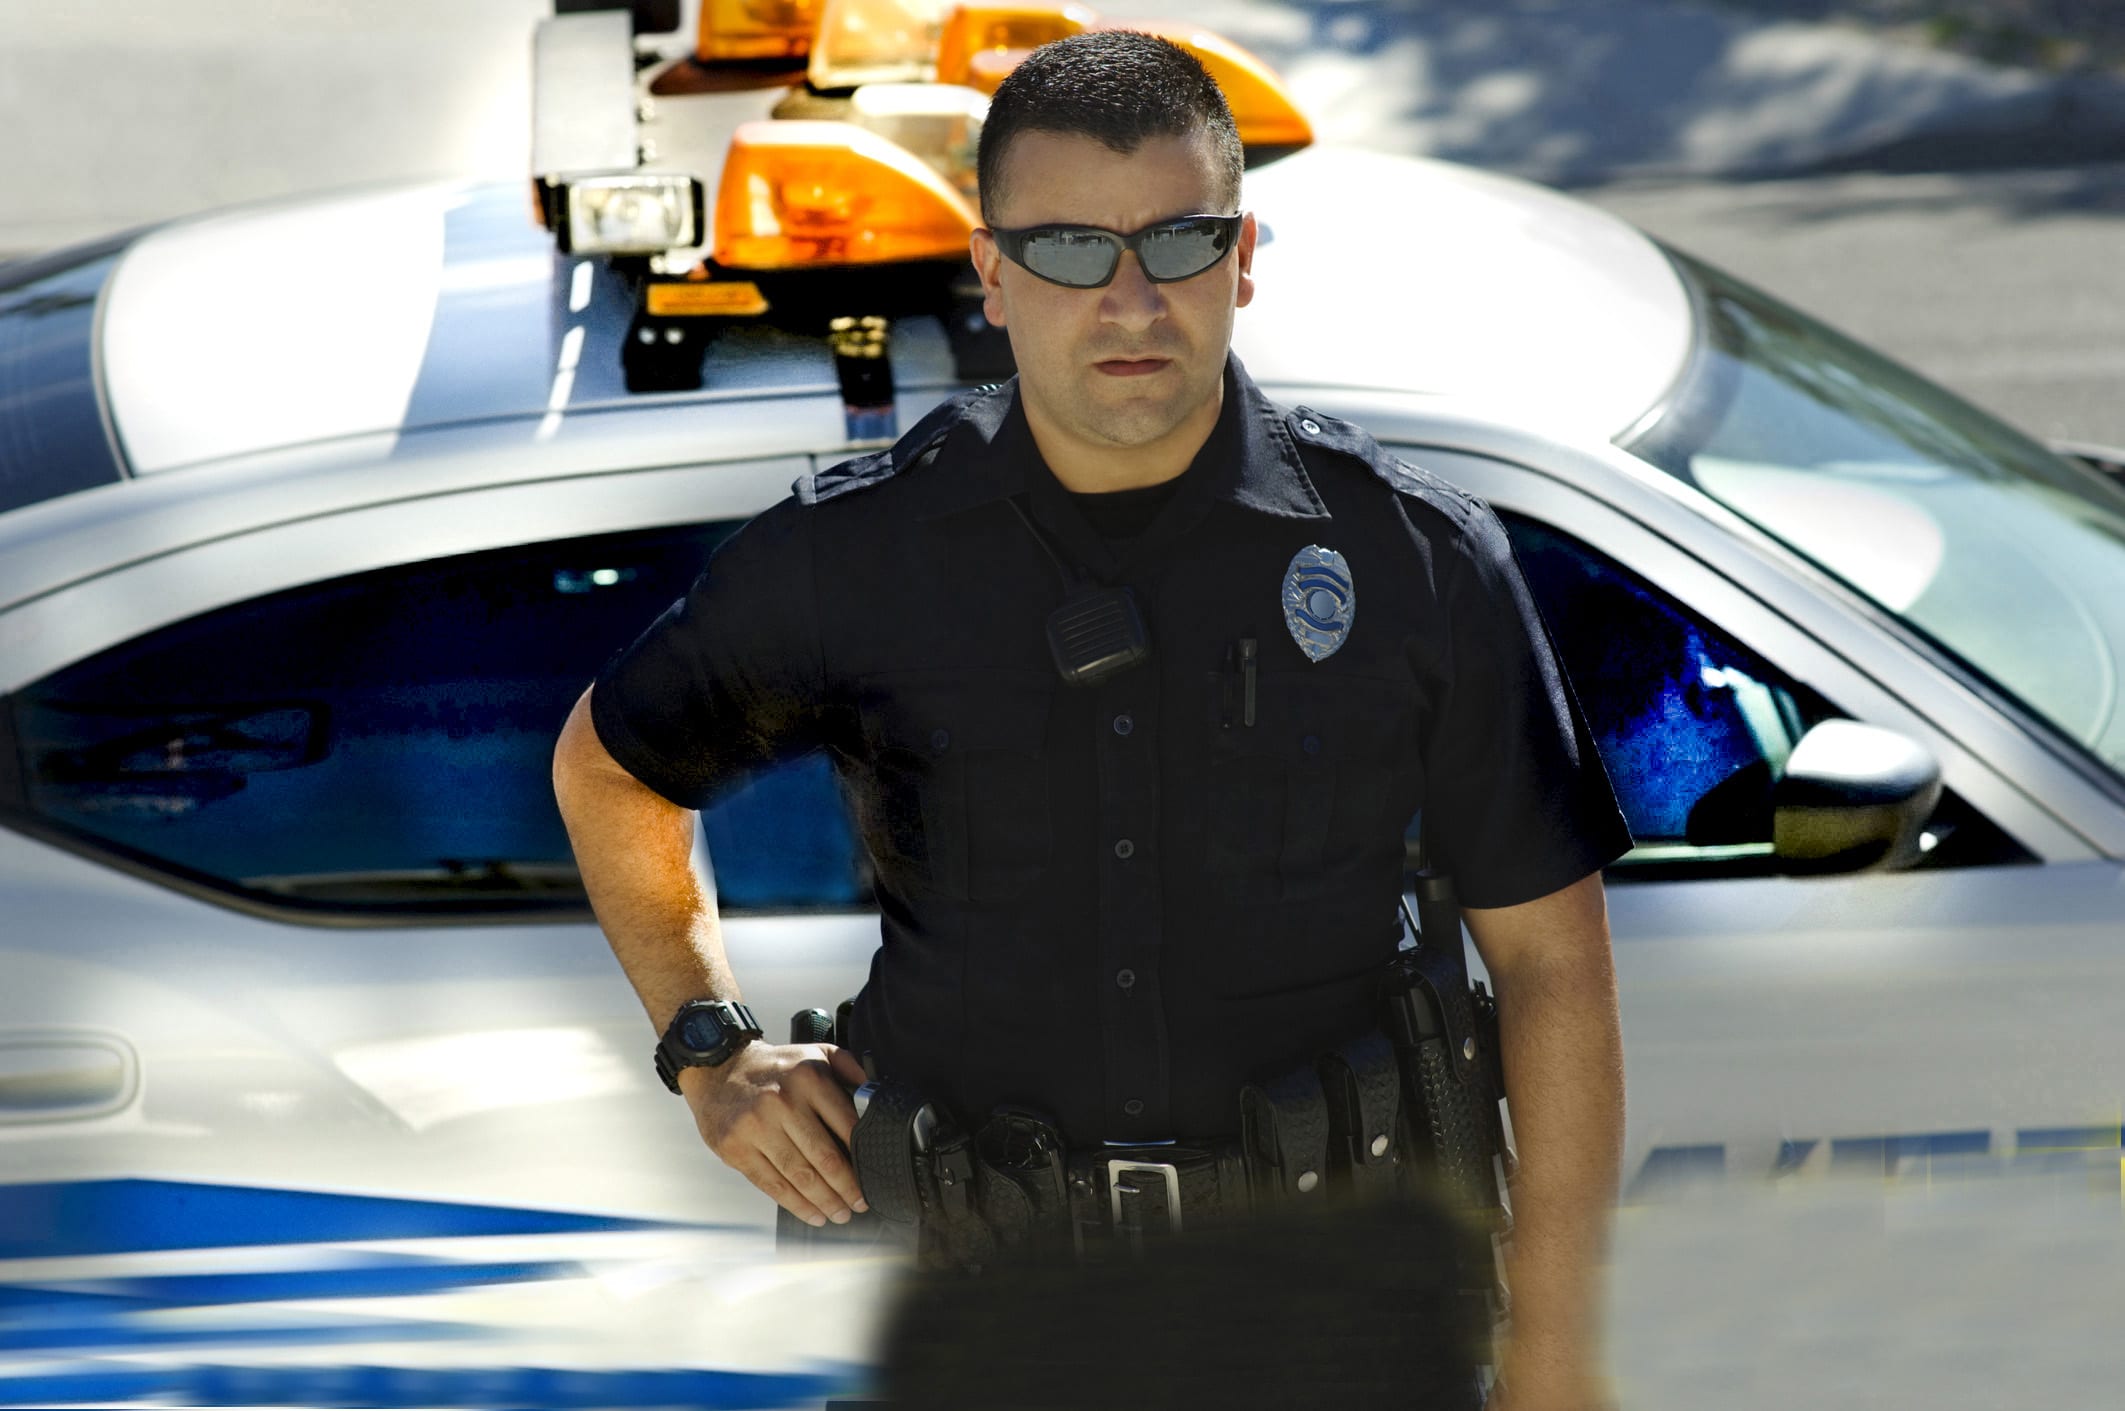 Goverment law enforcement jobs